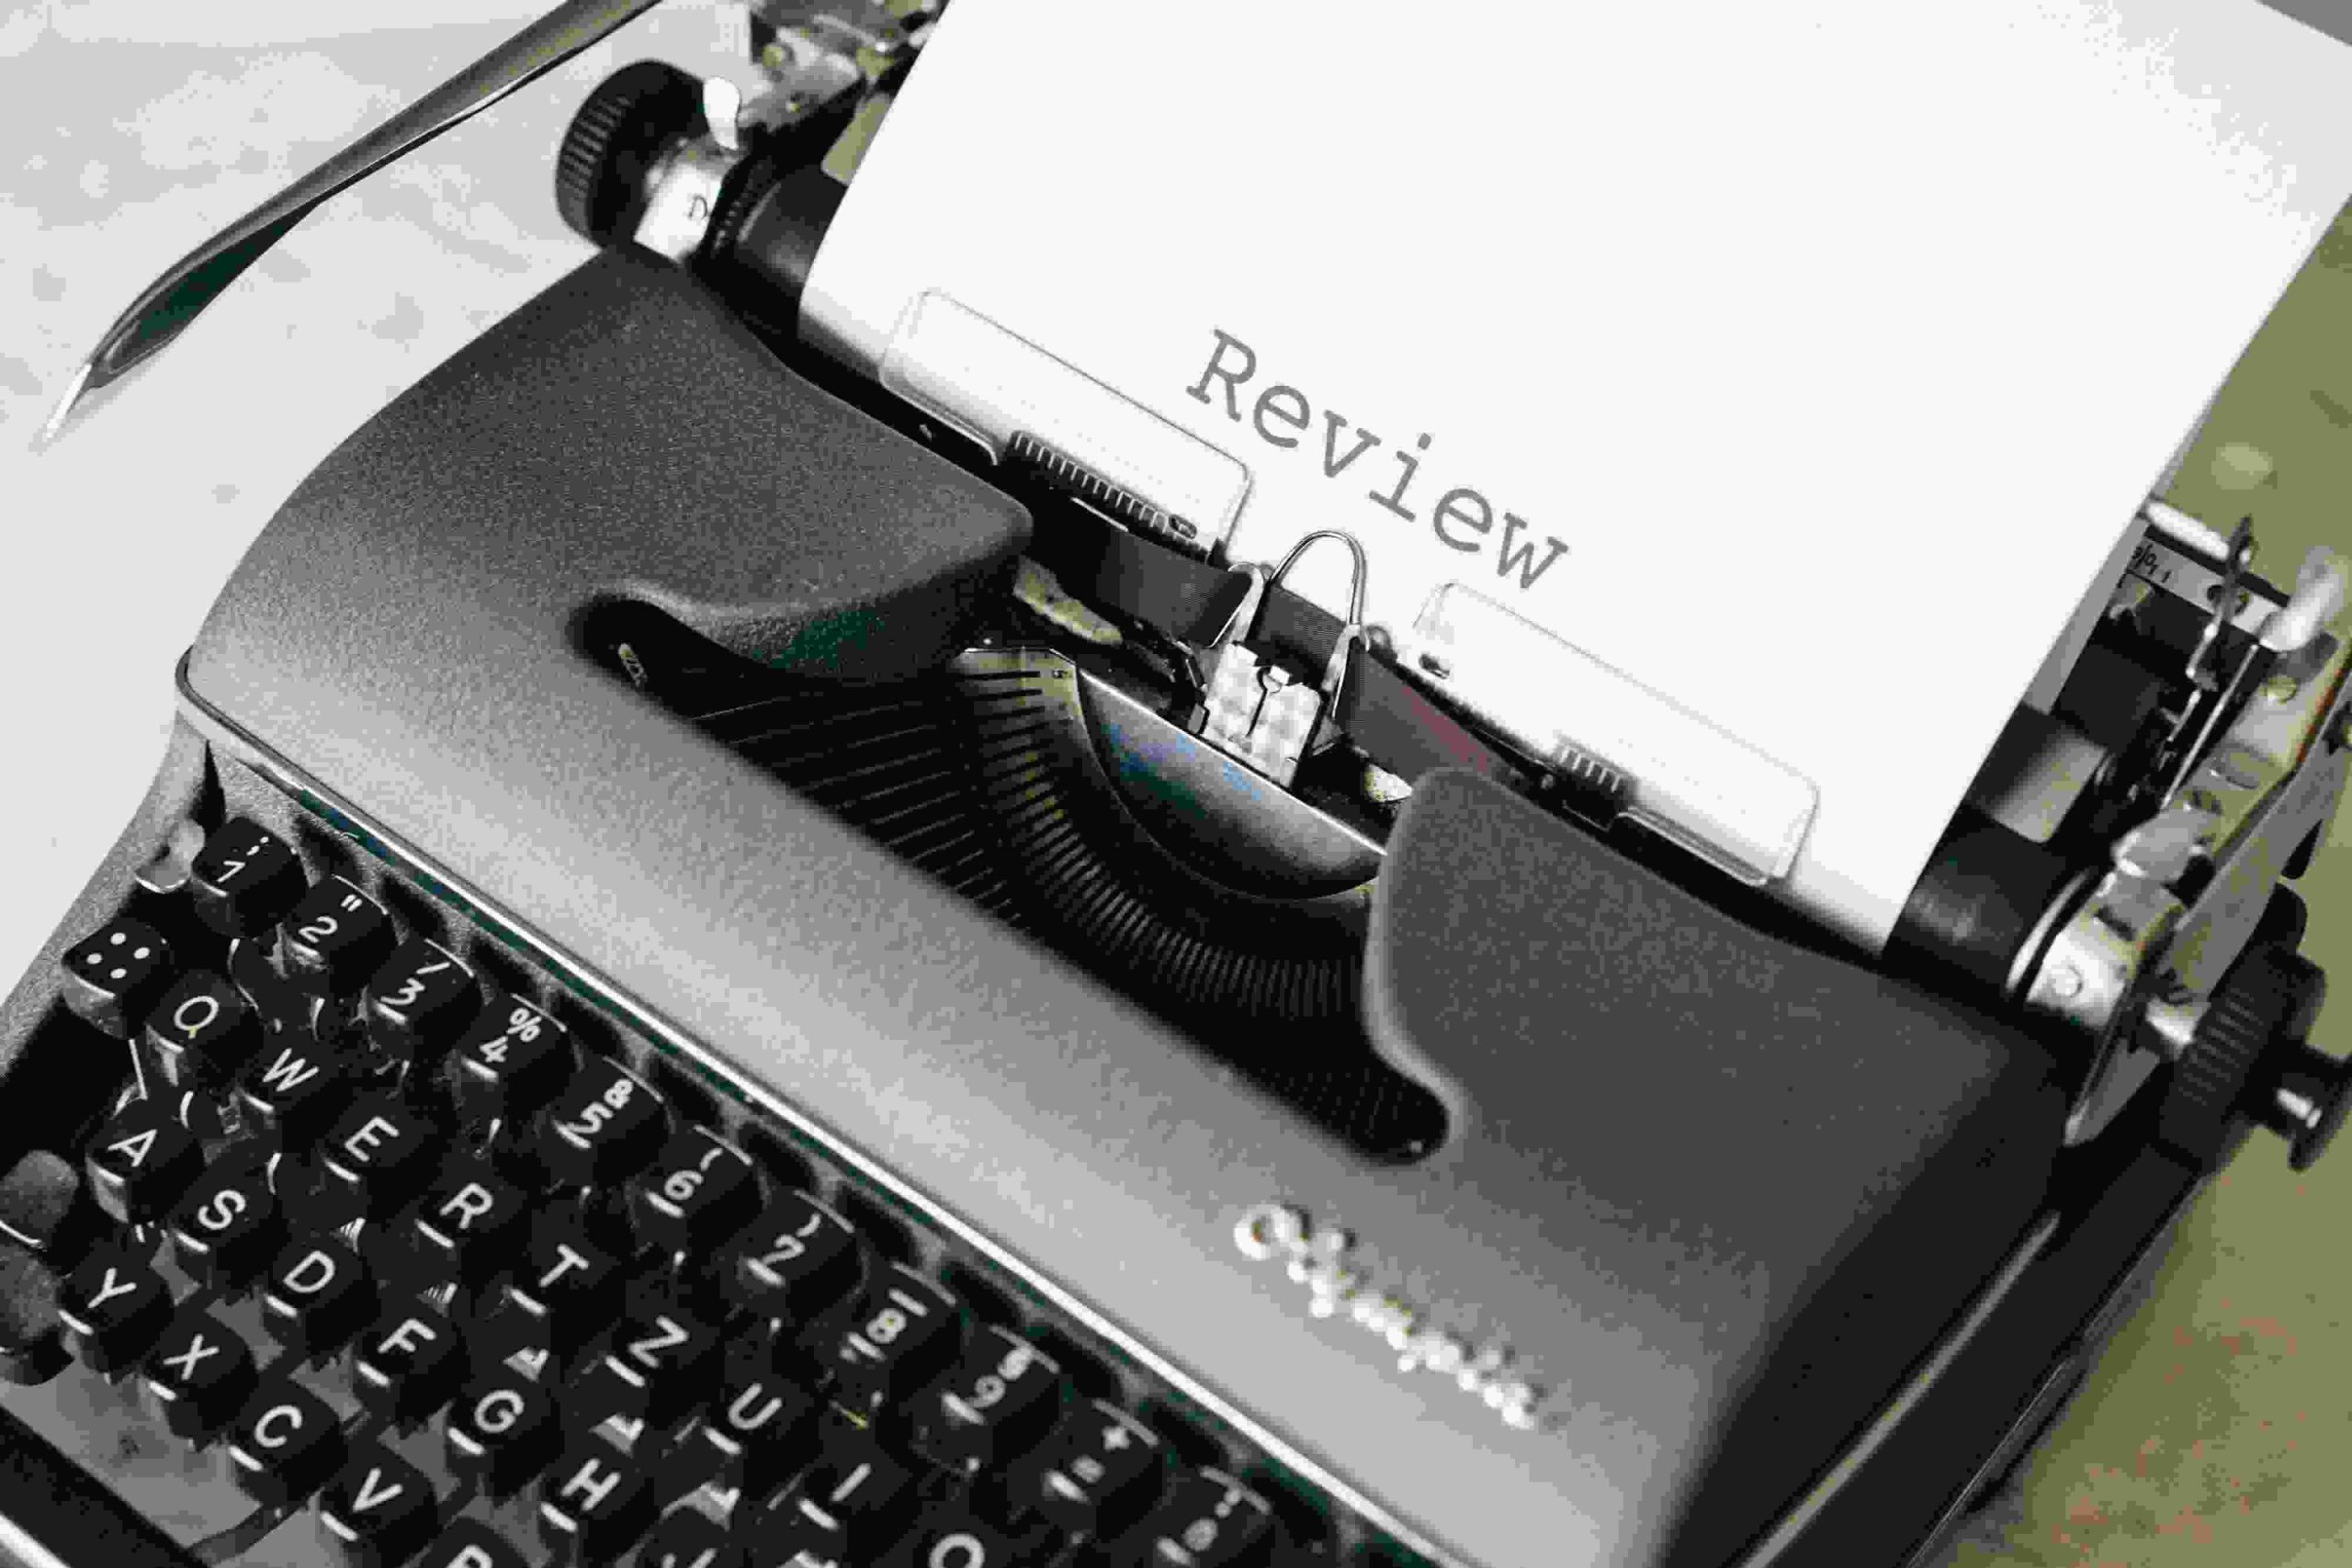 Typewriter review paper